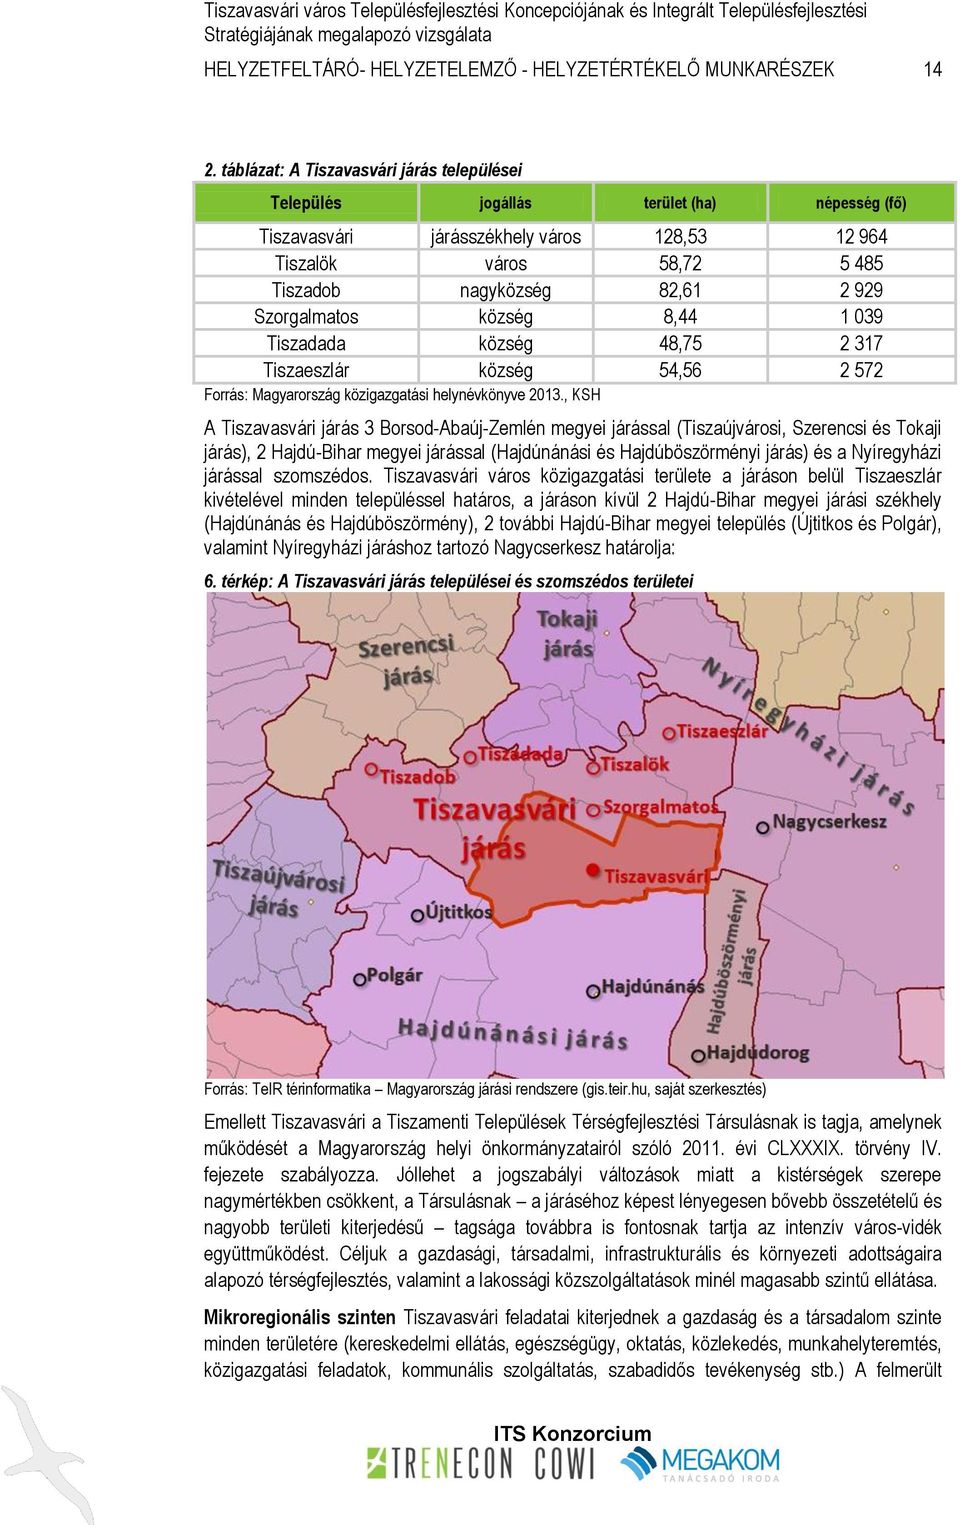 Szorgalmatos község 8,44 1 039 Tiszadada község 48,75 2 317 Tiszaeszlár község 54,56 2 572 Forrás: Magyarország közigazgatási helynévkönyve 2013.